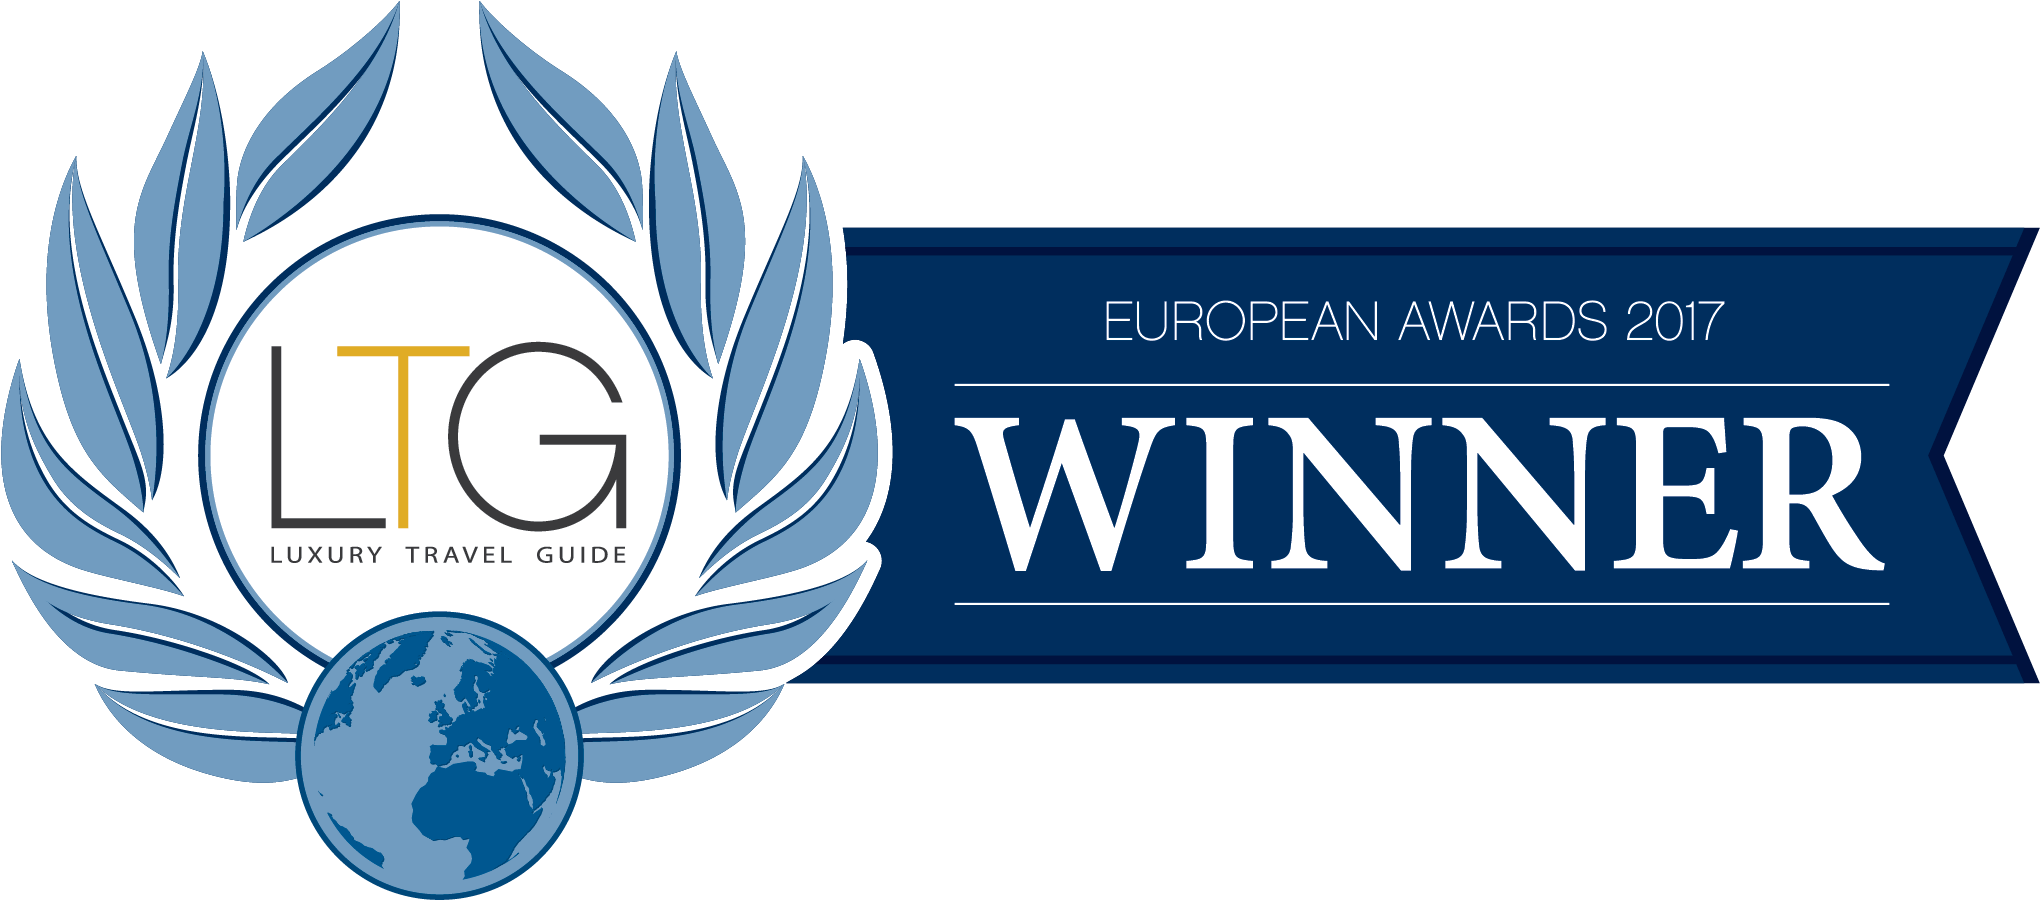 L T G European Awards2017 Winner Badge